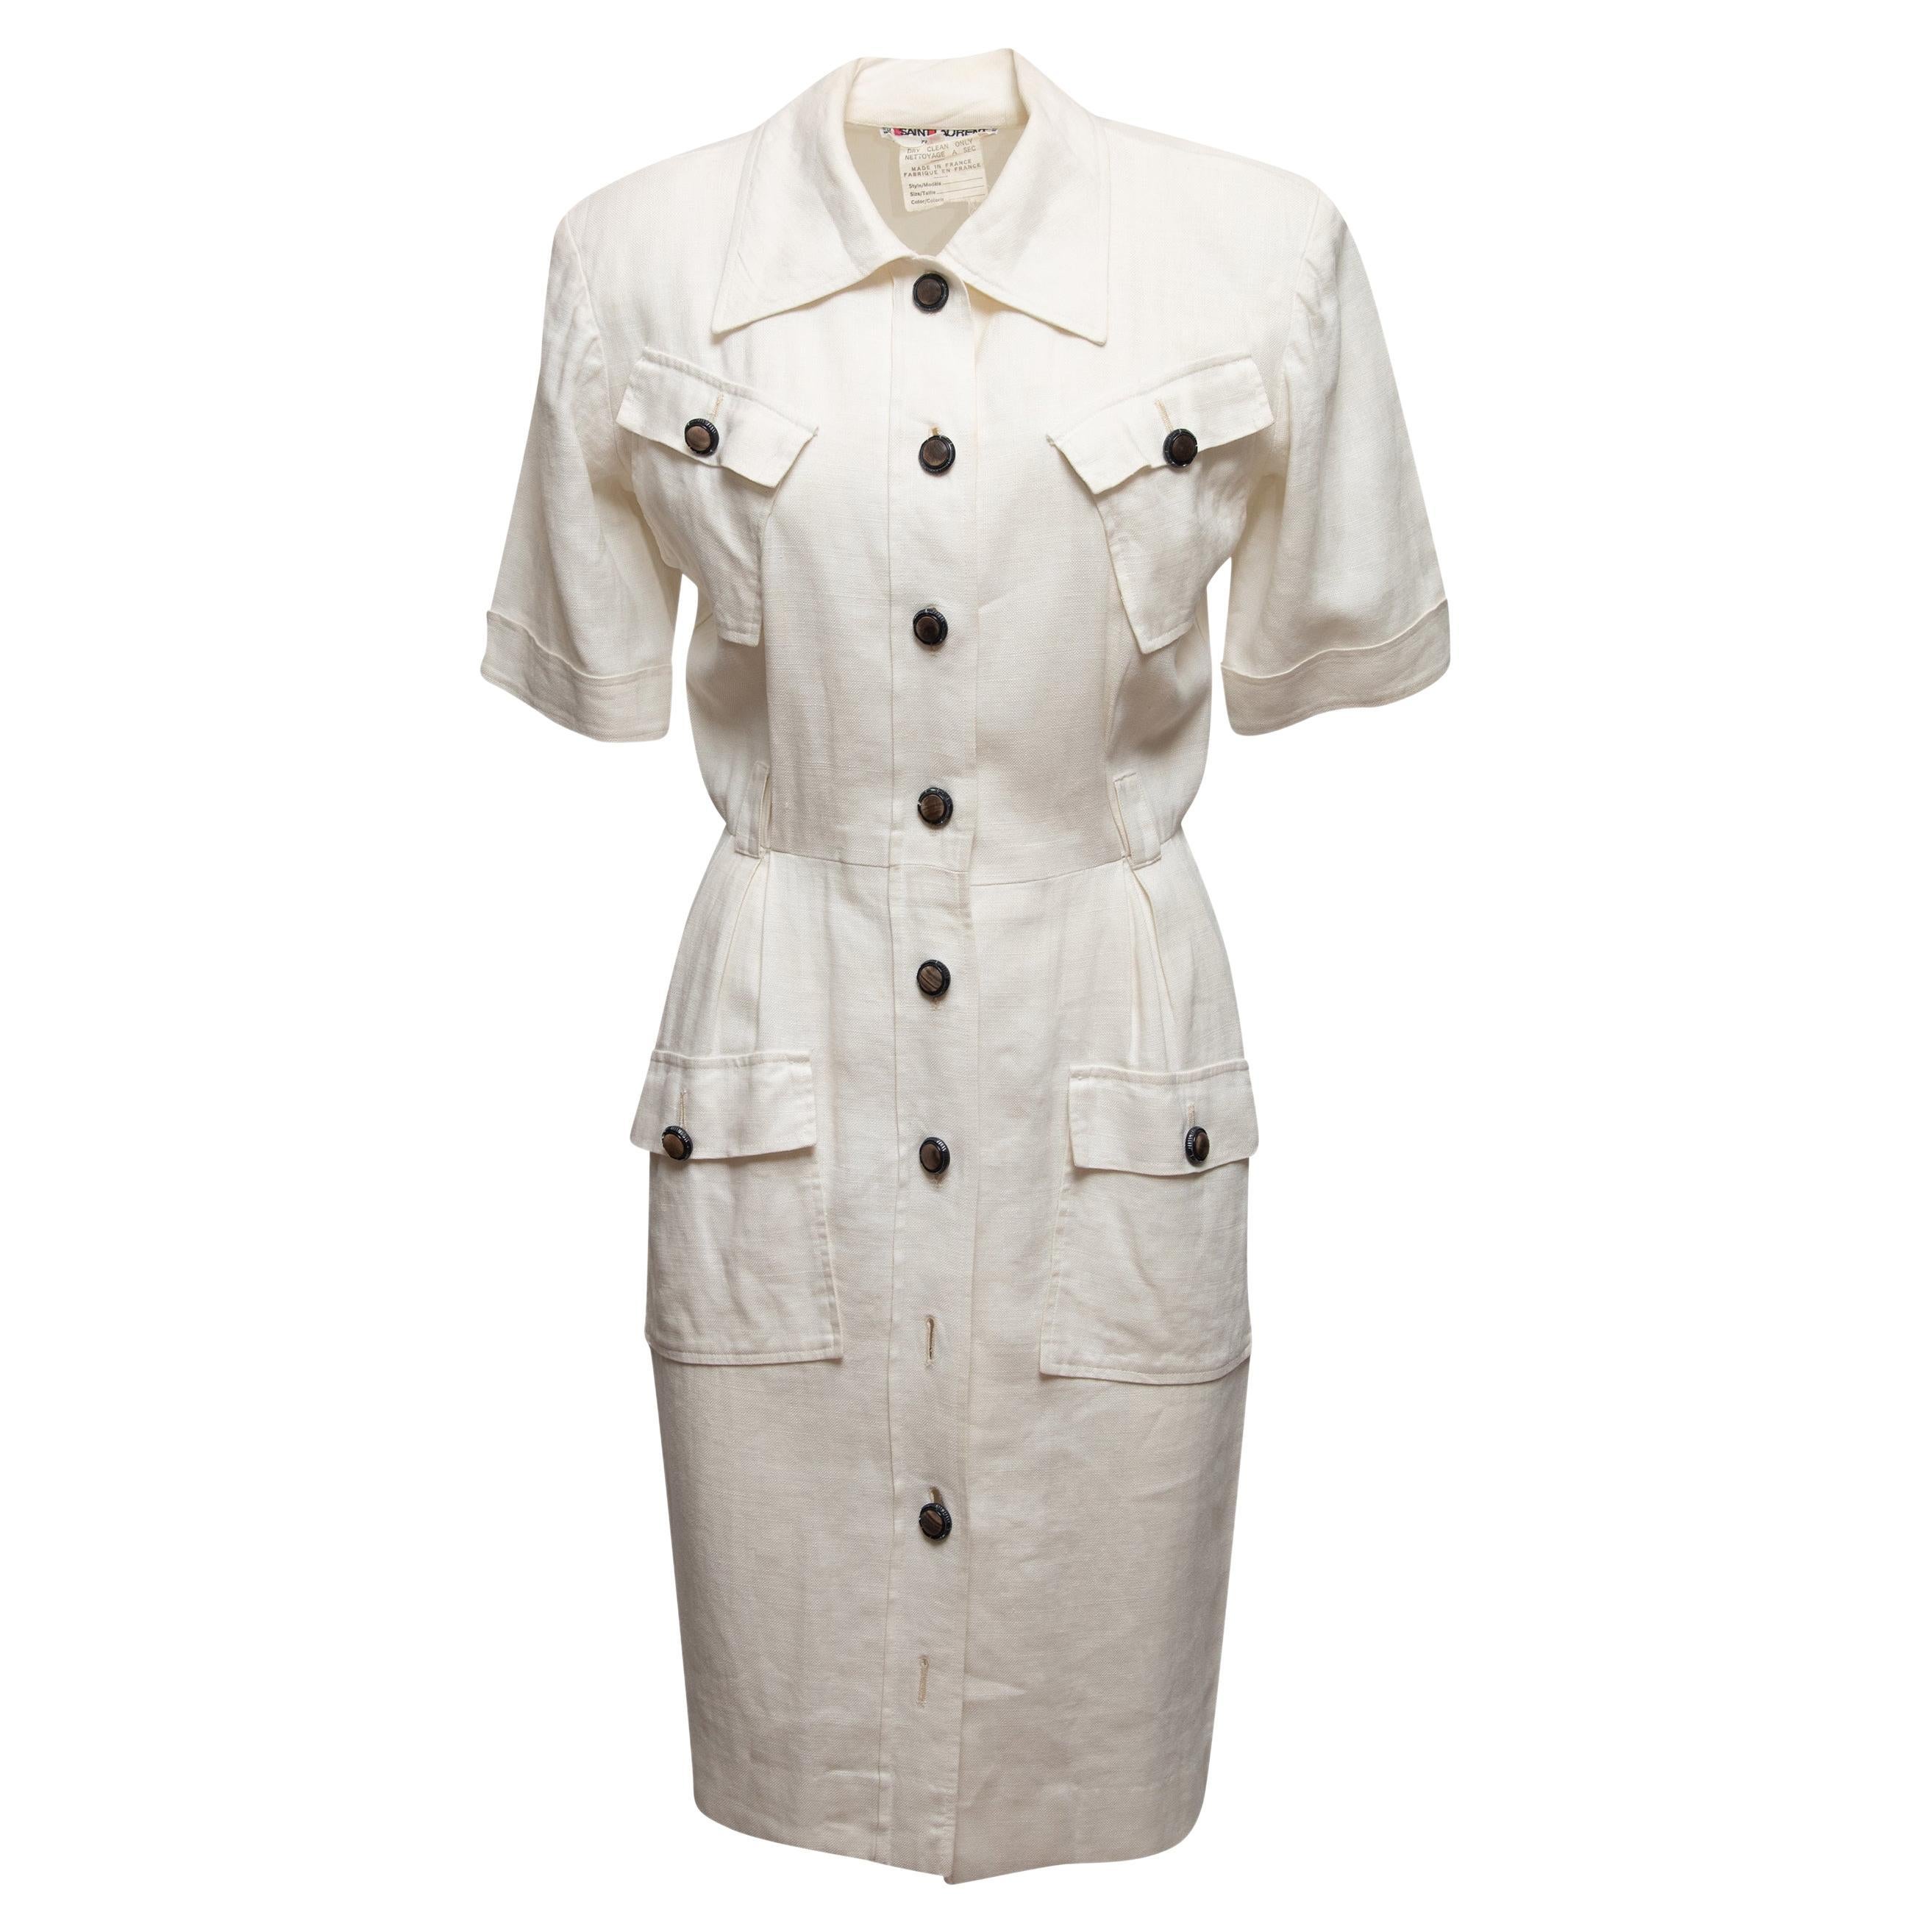 Vintage White Saint Laurent 1970s Linen Dress For Sale